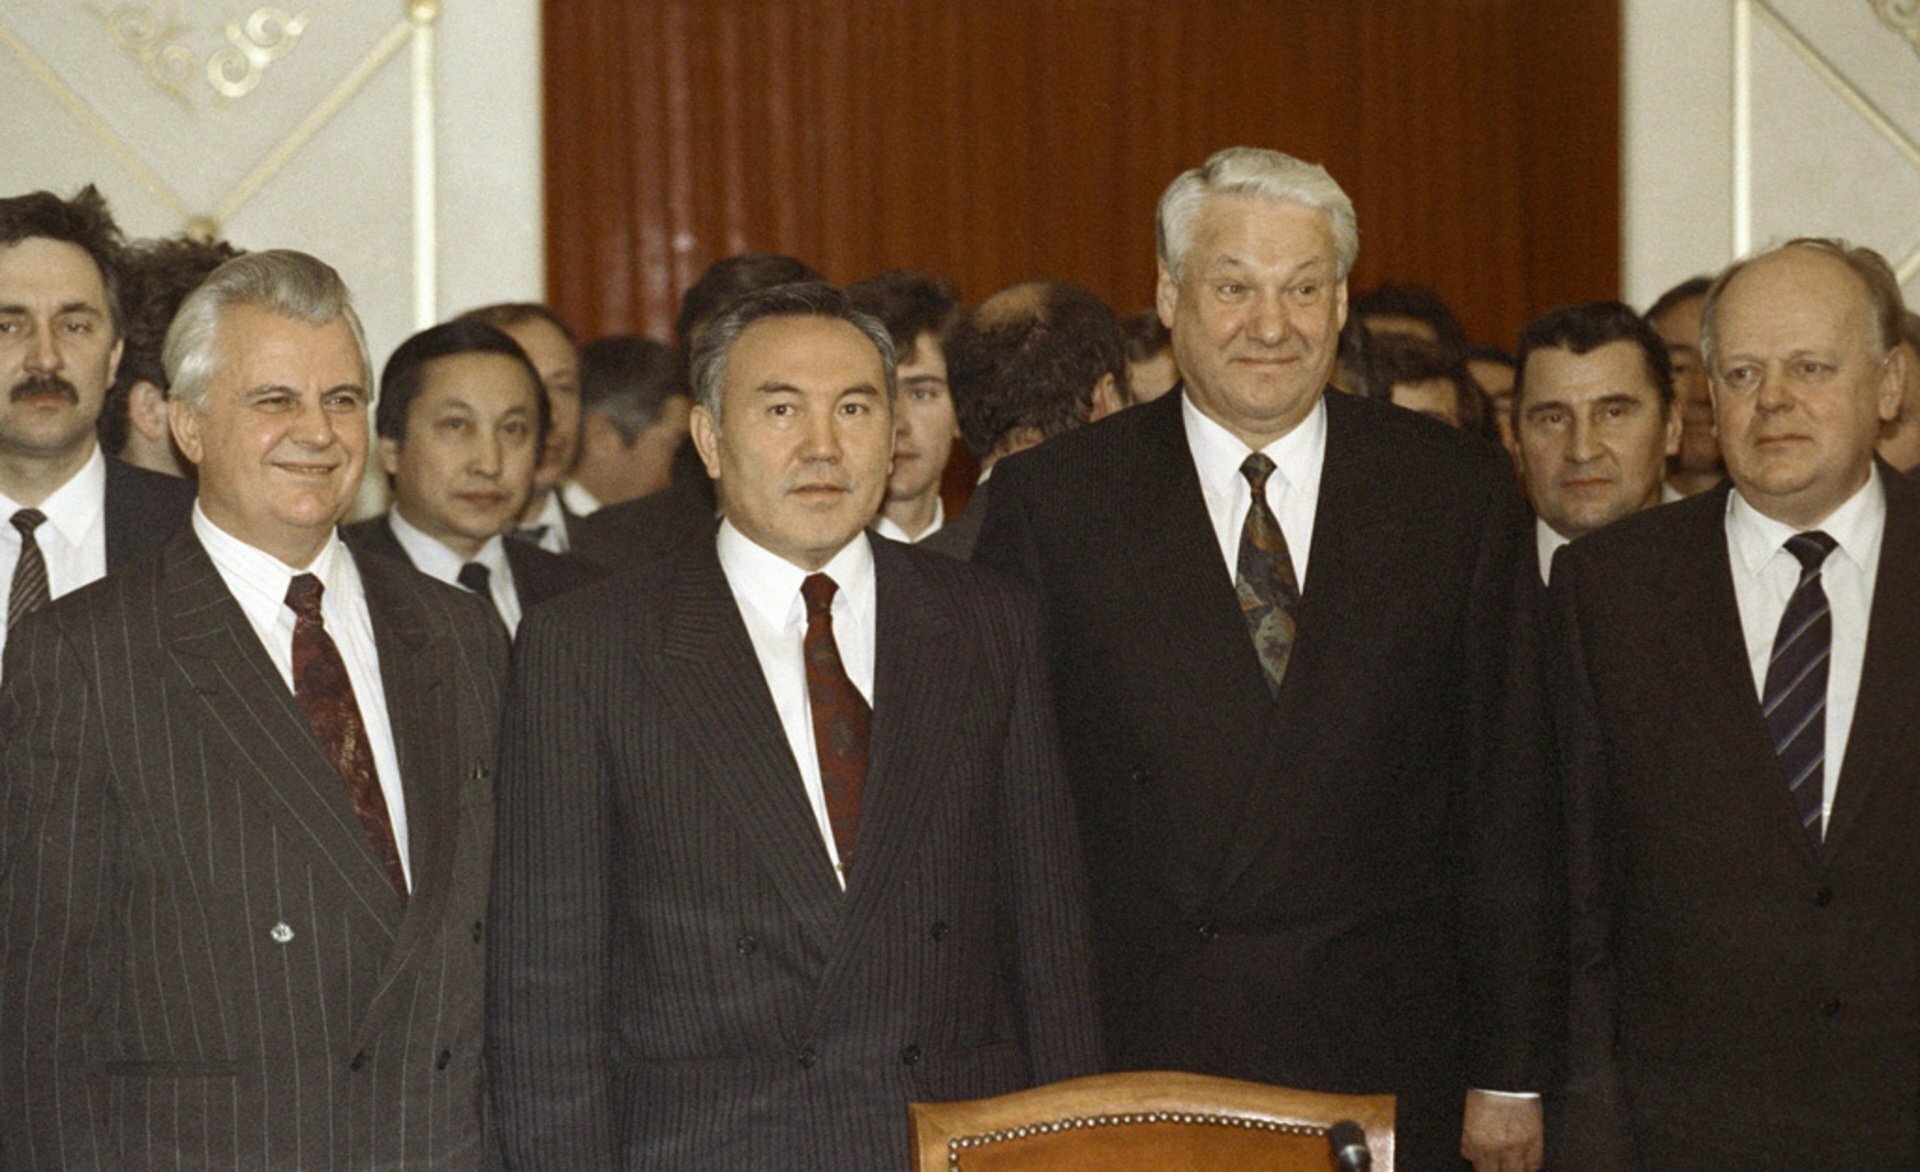 Назарбаев и Кравчук пошли против Ельцина и продлили жизнь СССР